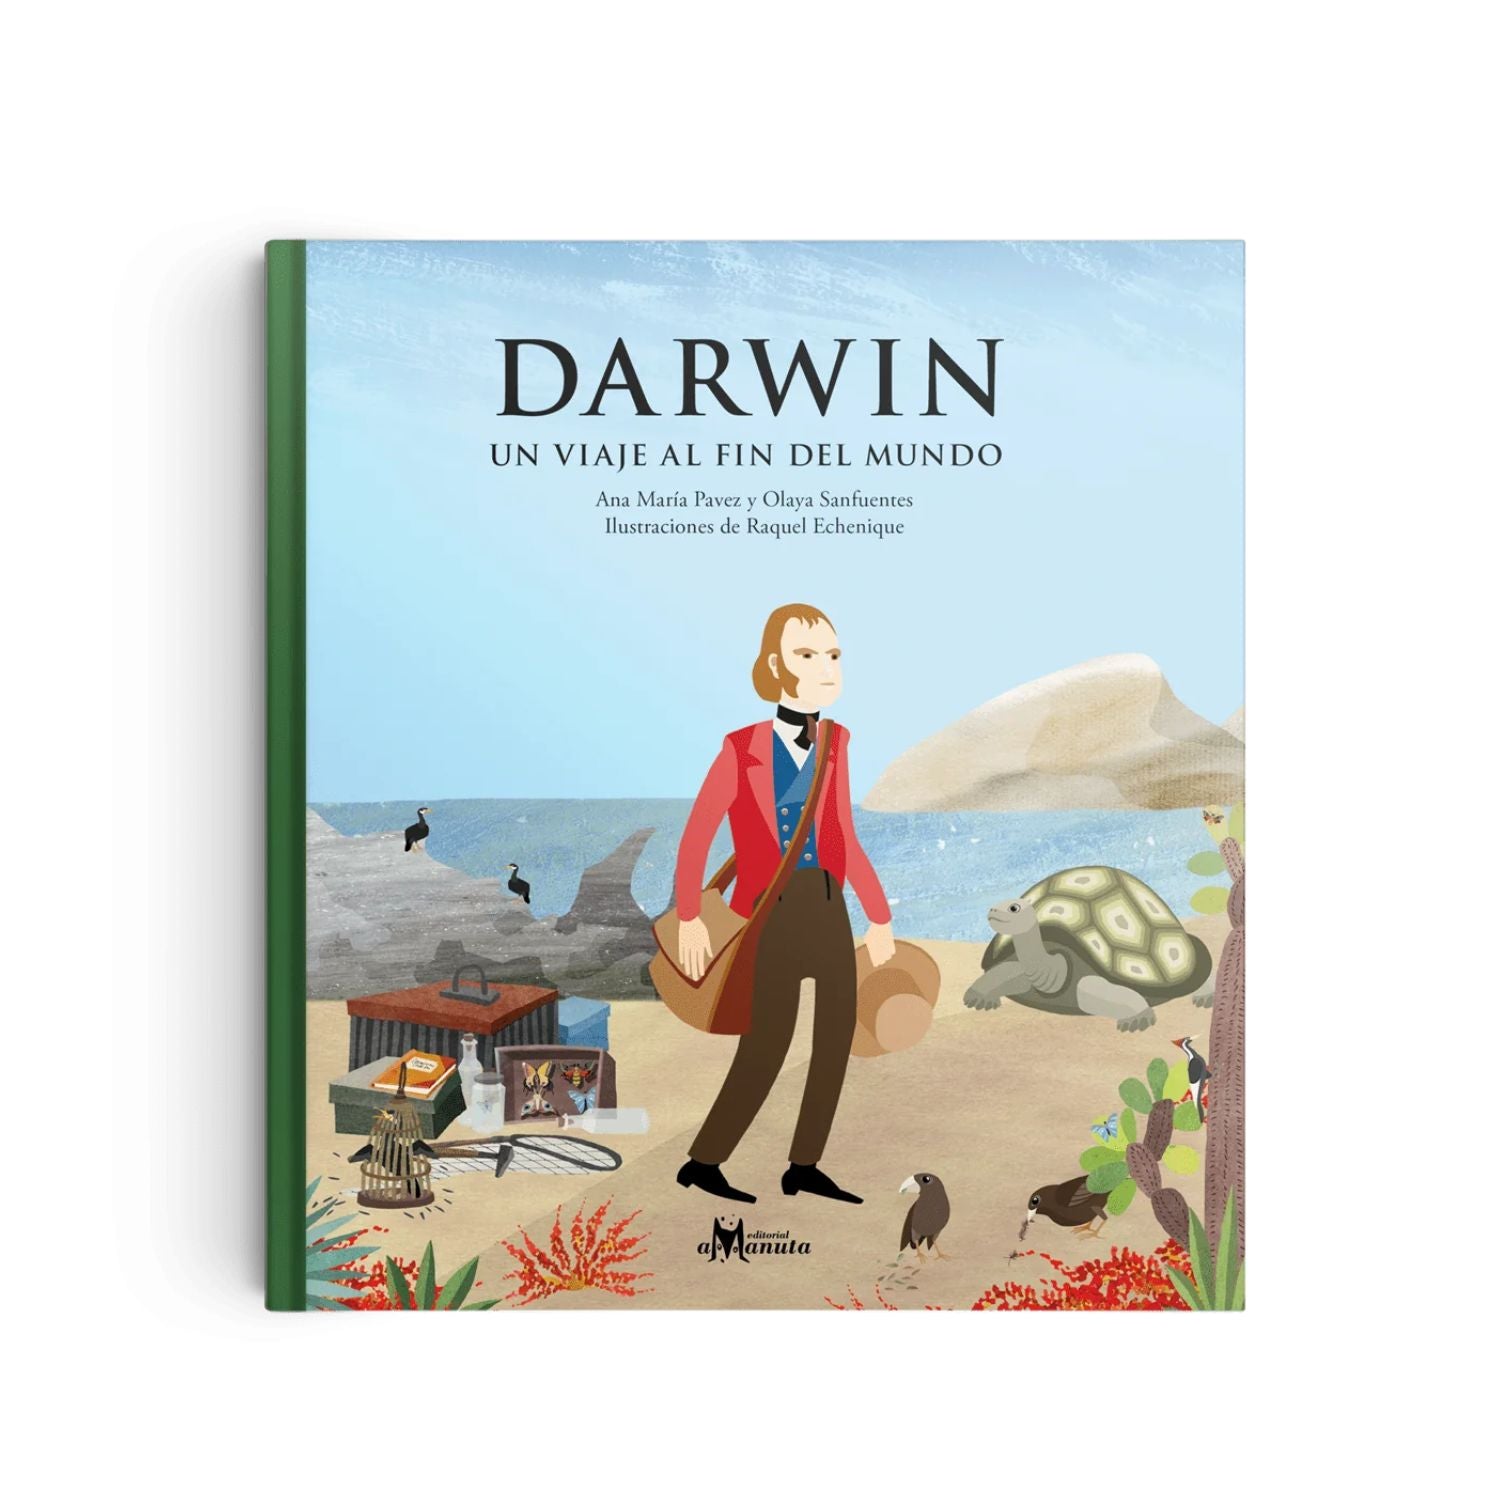 Darwin, un viaje al sur del mundo